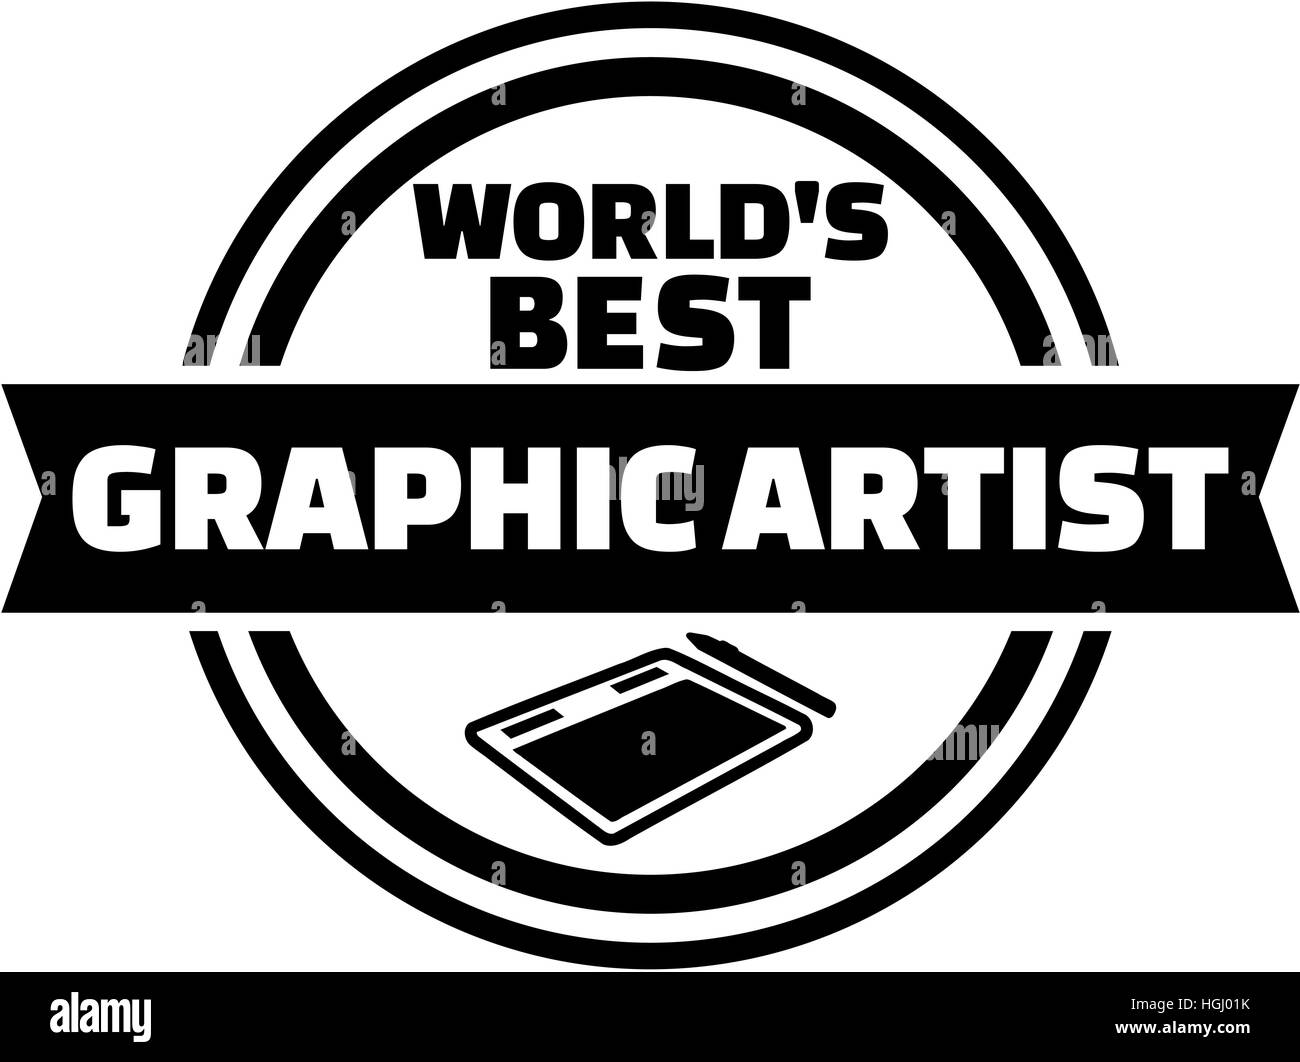 World's best Graphic Artist button Stock Photo